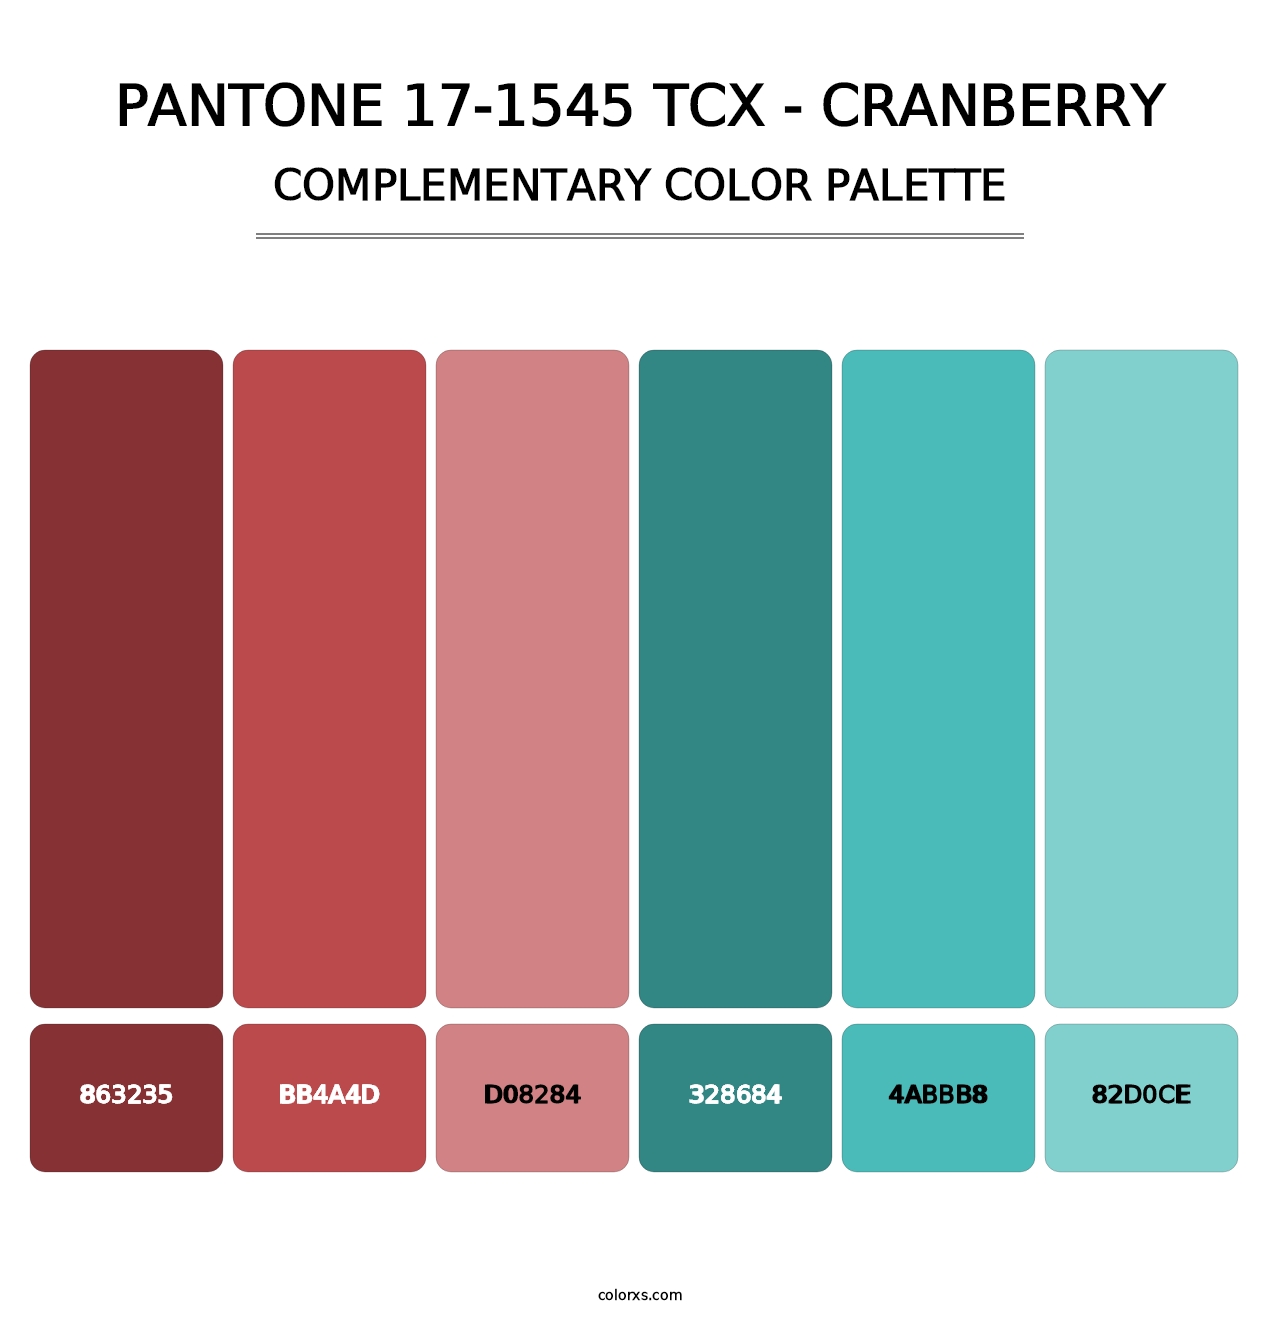 PANTONE 17-1545 TCX - Cranberry - Complementary Color Palette